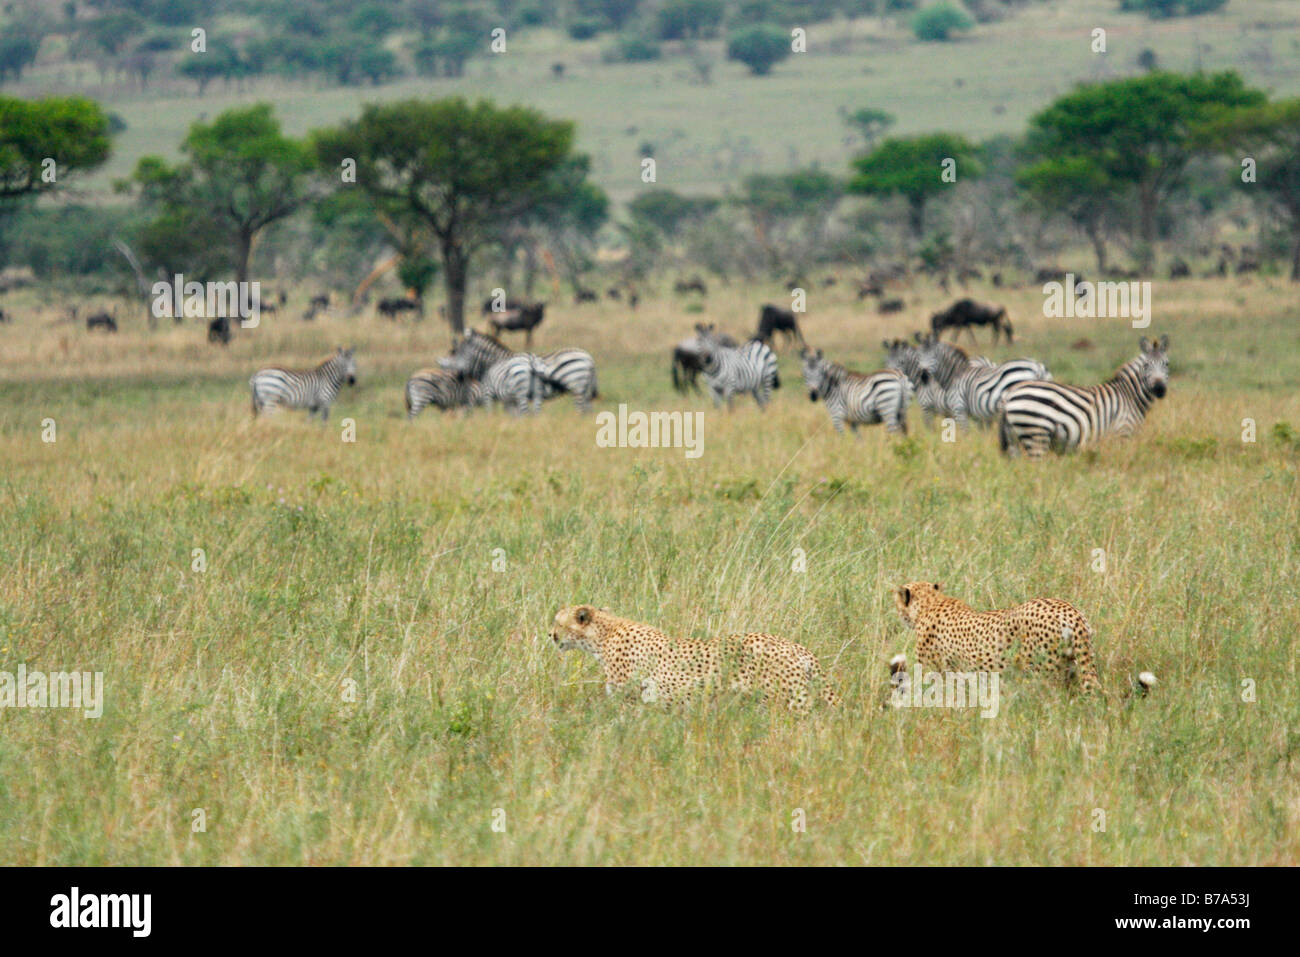 Par de chitas caminando a través de pasto largo ver pastando manadas de cebras, ñus azules en el fondo Foto de stock